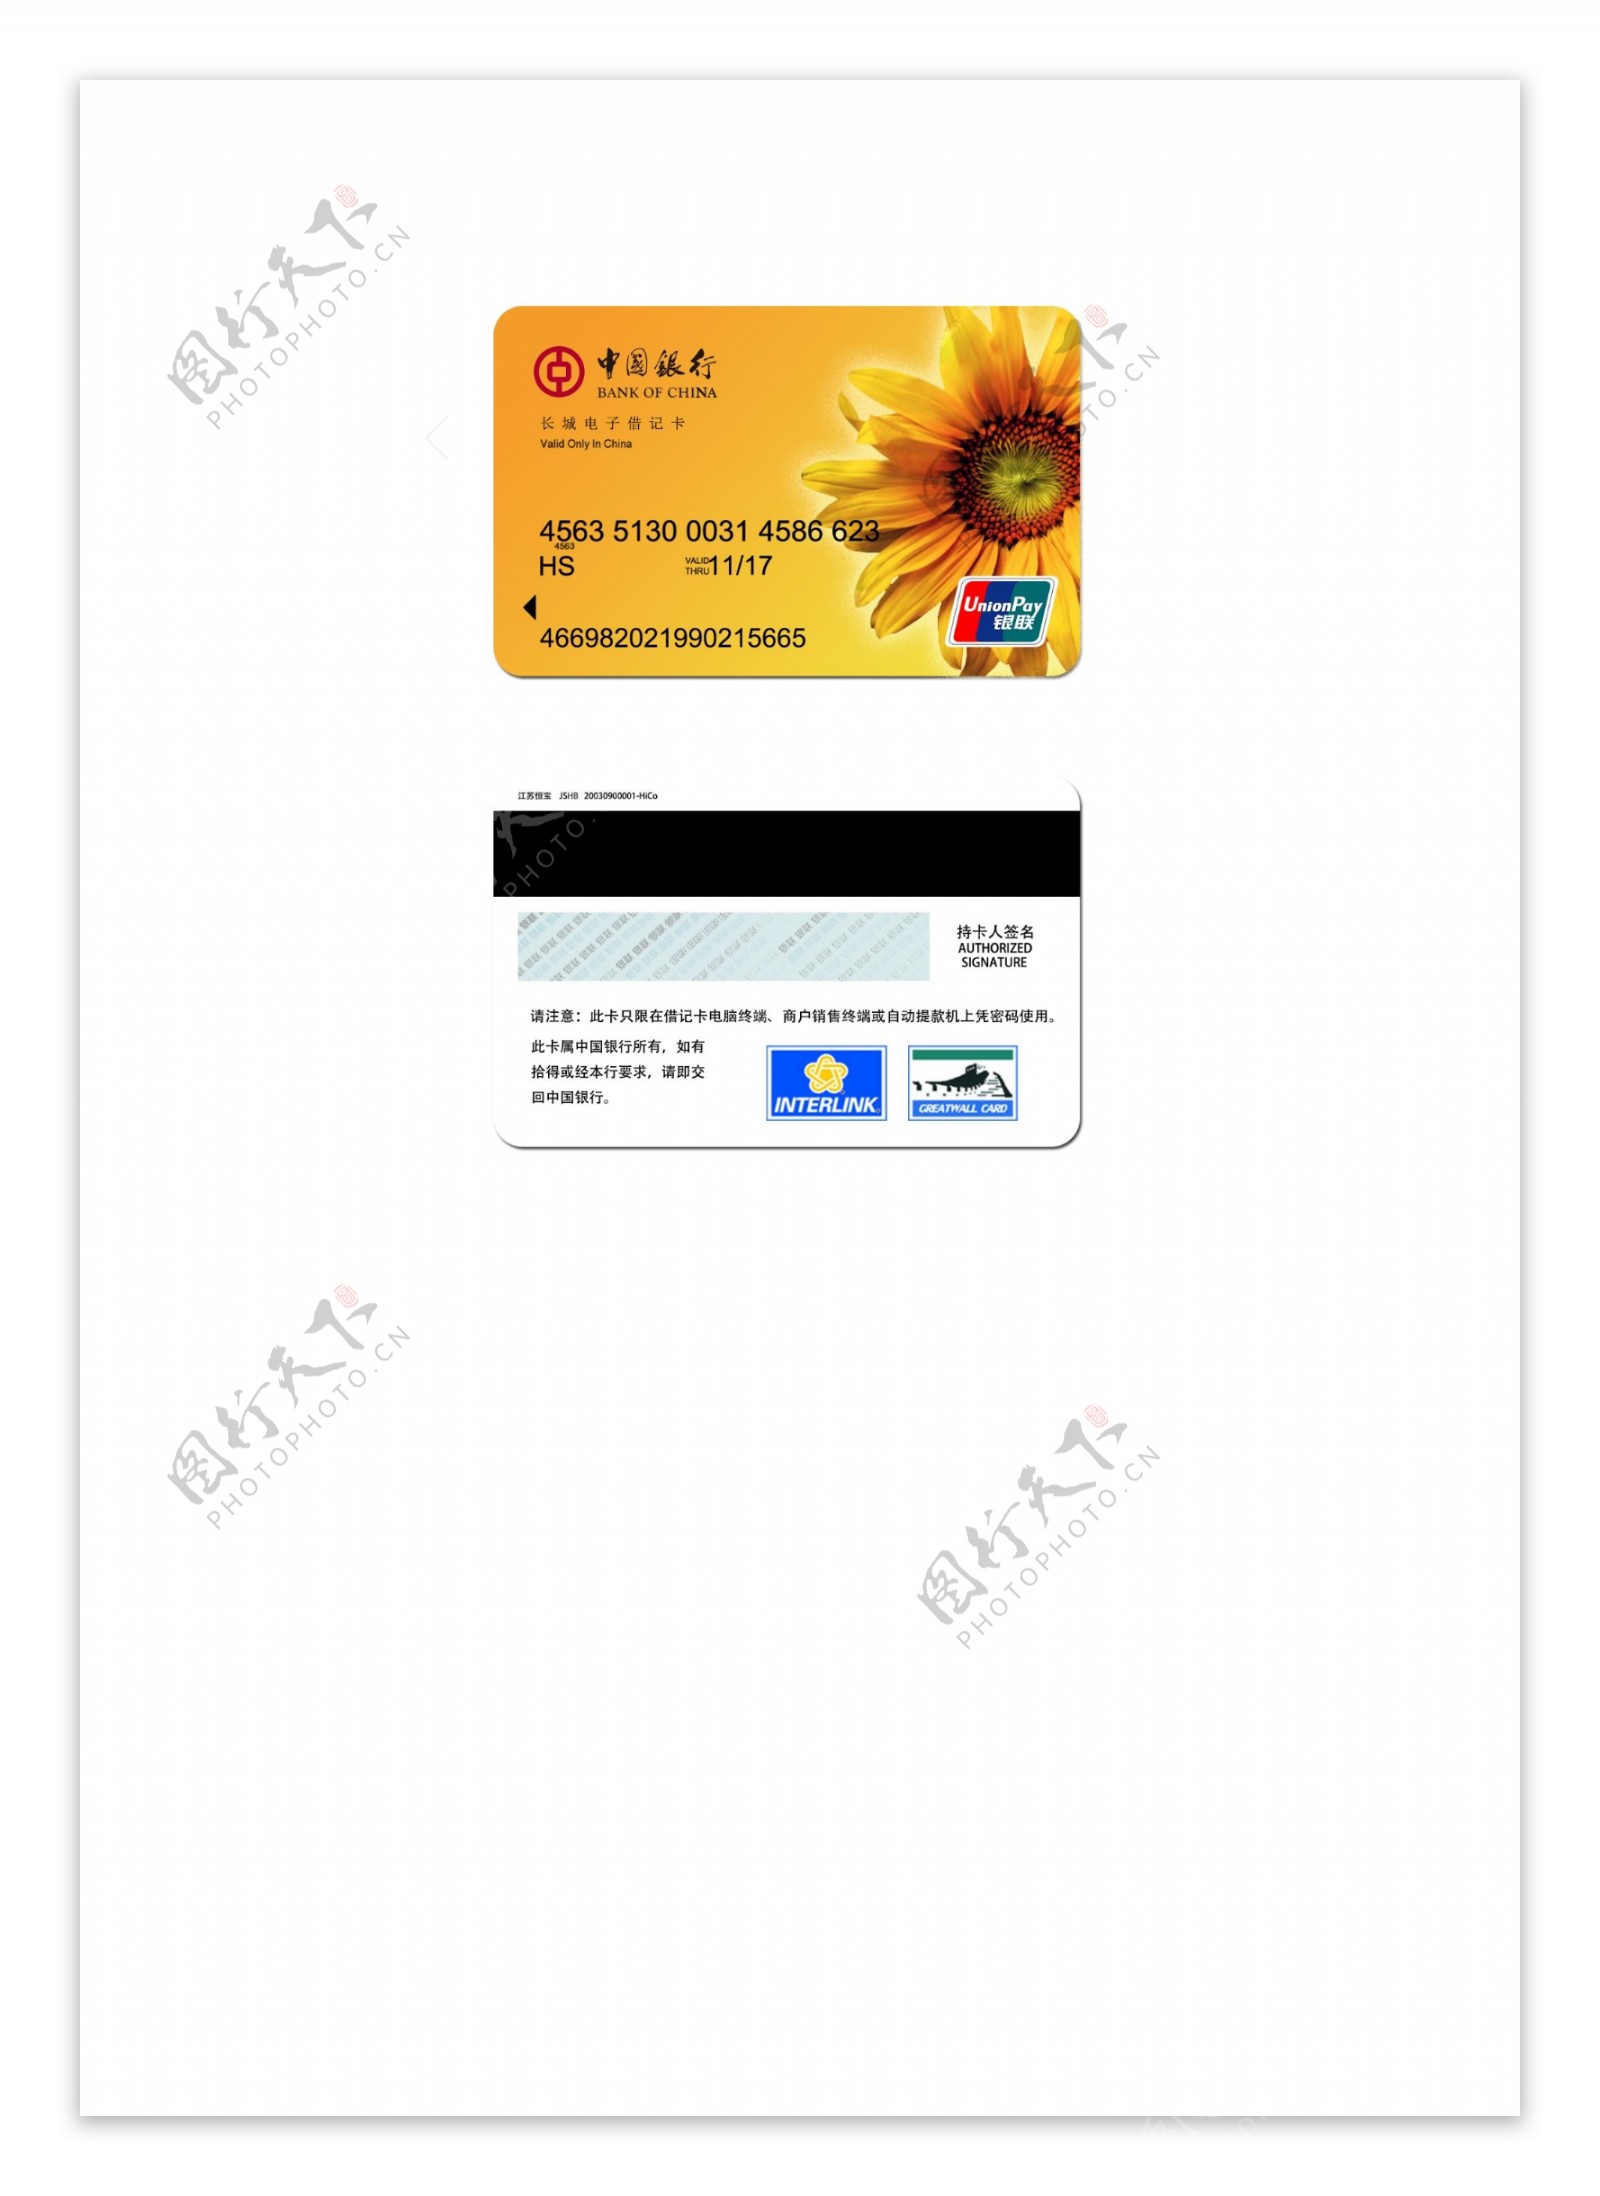 中国银行银行卡设计图片